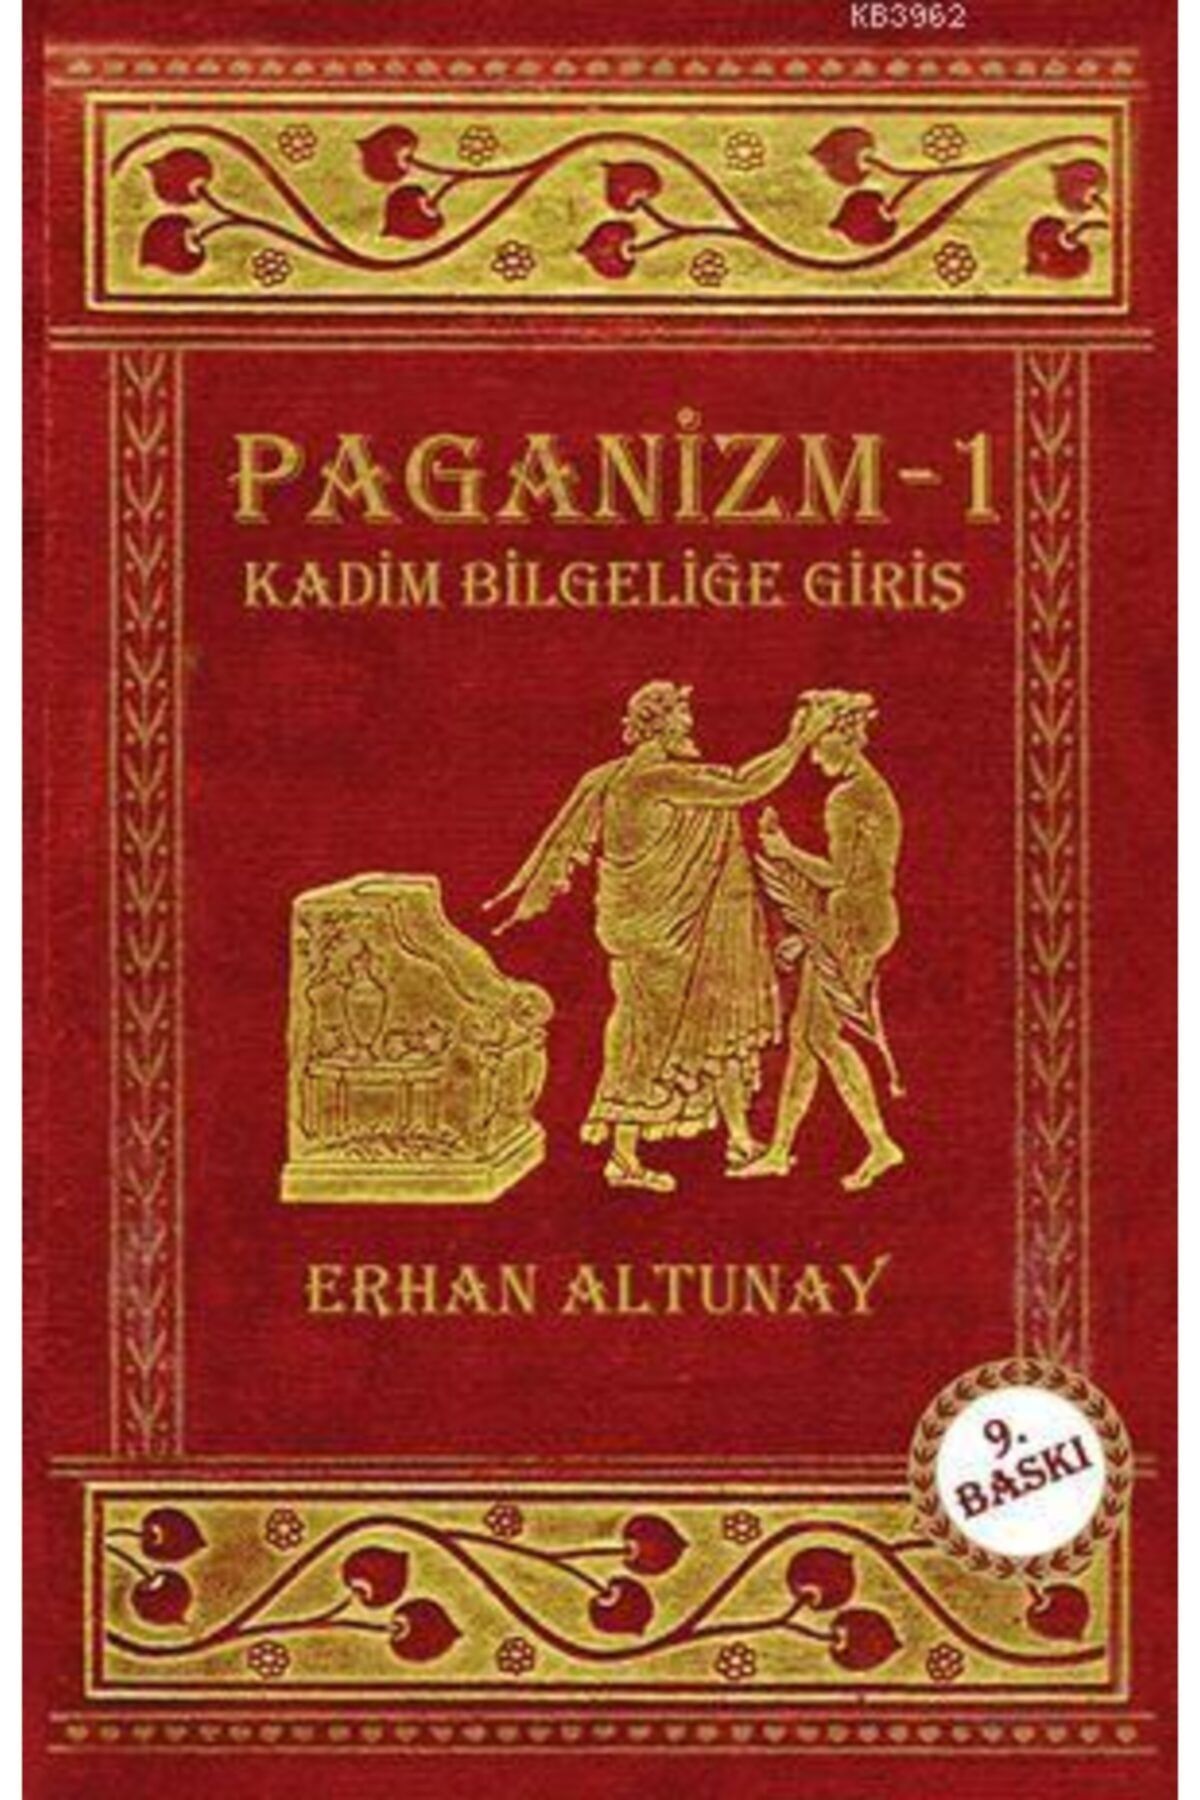 Hermes Yayınları Paganizm 1 - Kadim Bilgeliğe Giriş / Erhan Altunay / / 9789756130438